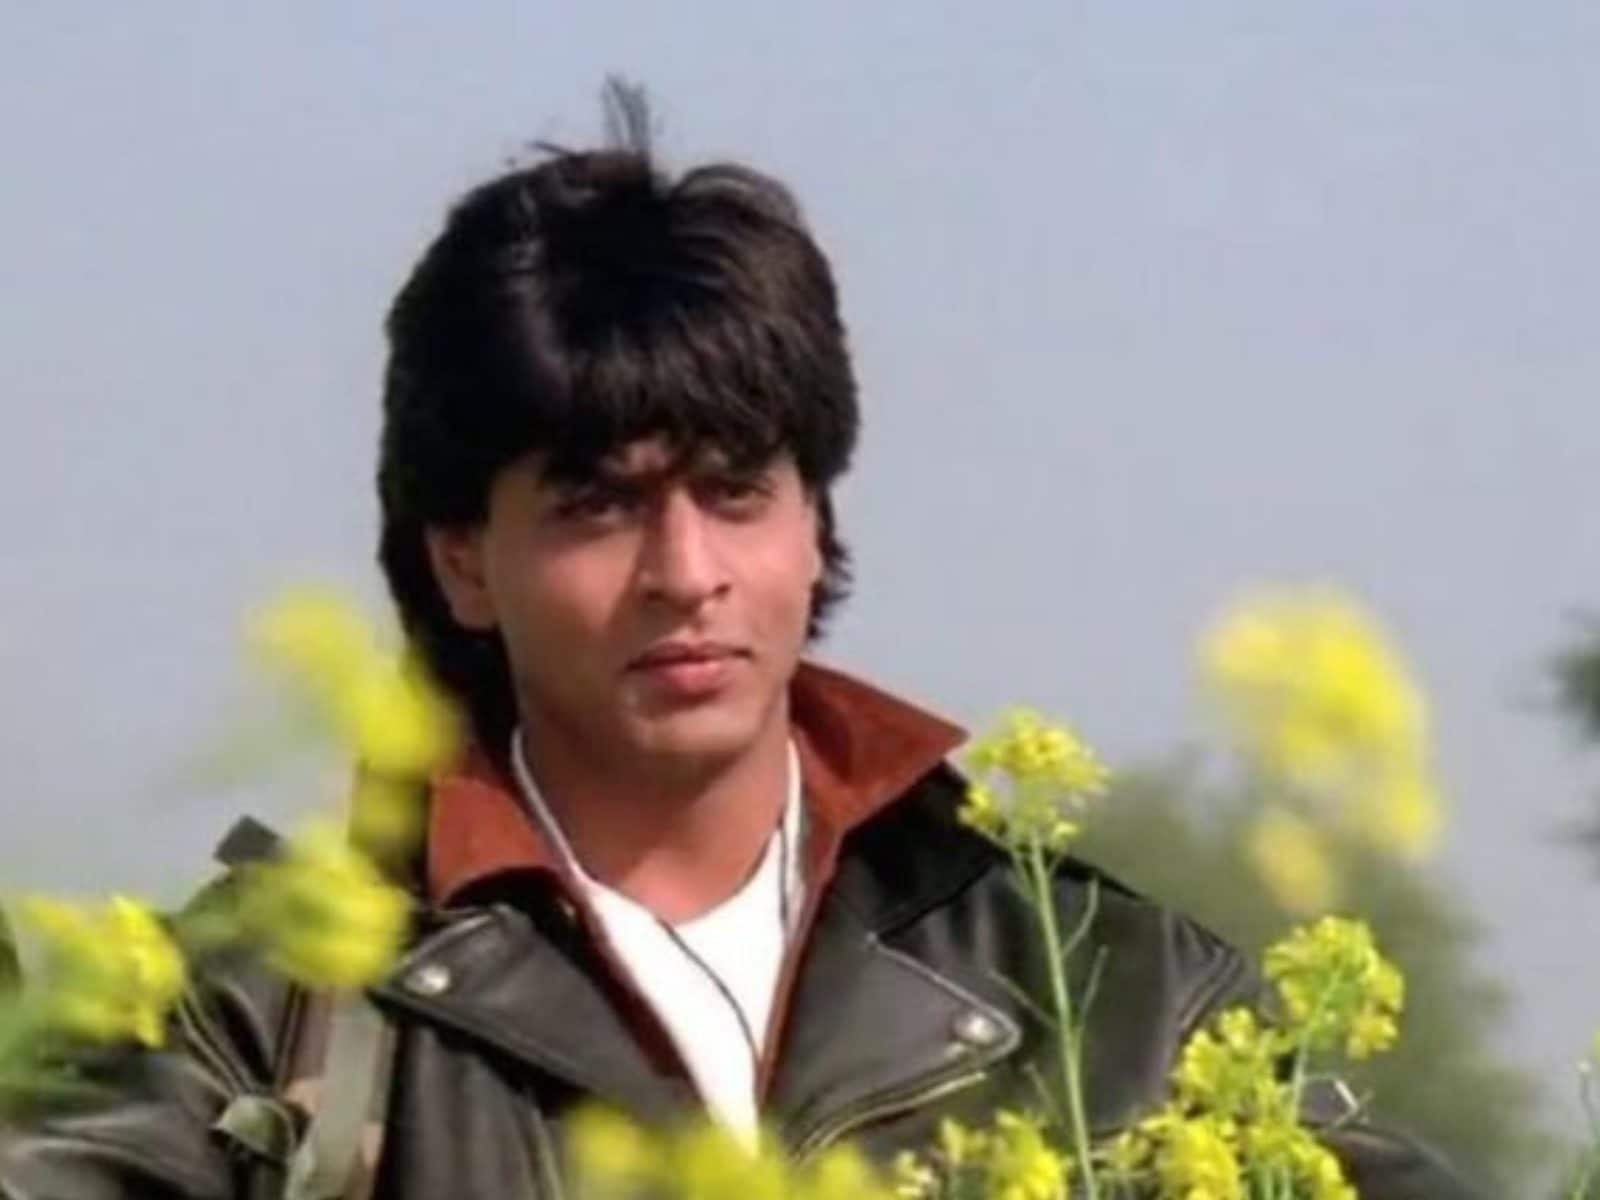 Shahrukh Khan / DDLJ. Shah rukh khan movies, Shahrukh khan, Dilwale  Dulhania Le Jayenge HD phone wallpaper | Pxfuel